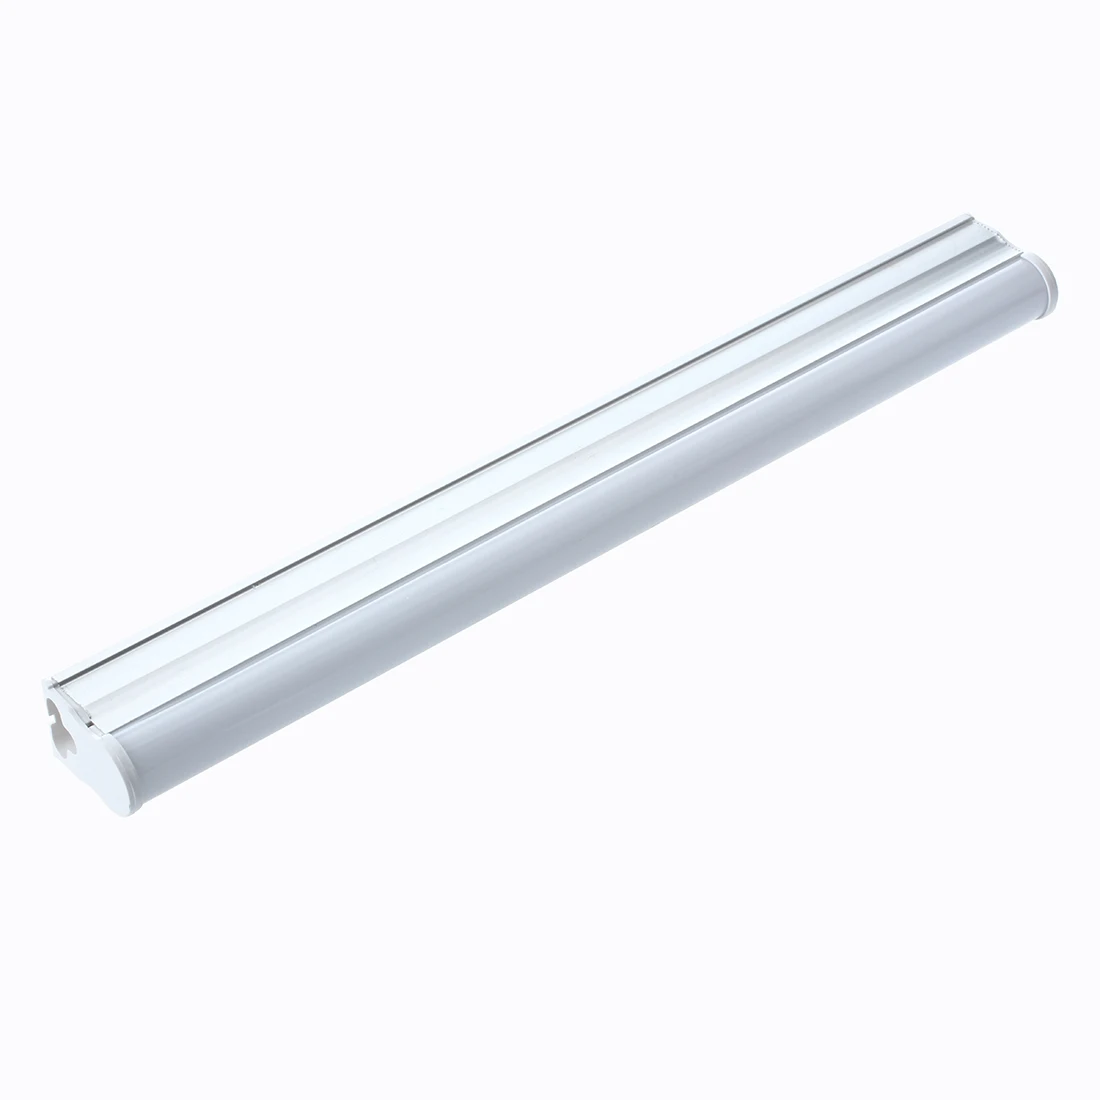 

T5 4W 30cm SMD 2835 40 White LED Tube Light Lamp Bar AC 90-240V 320LM